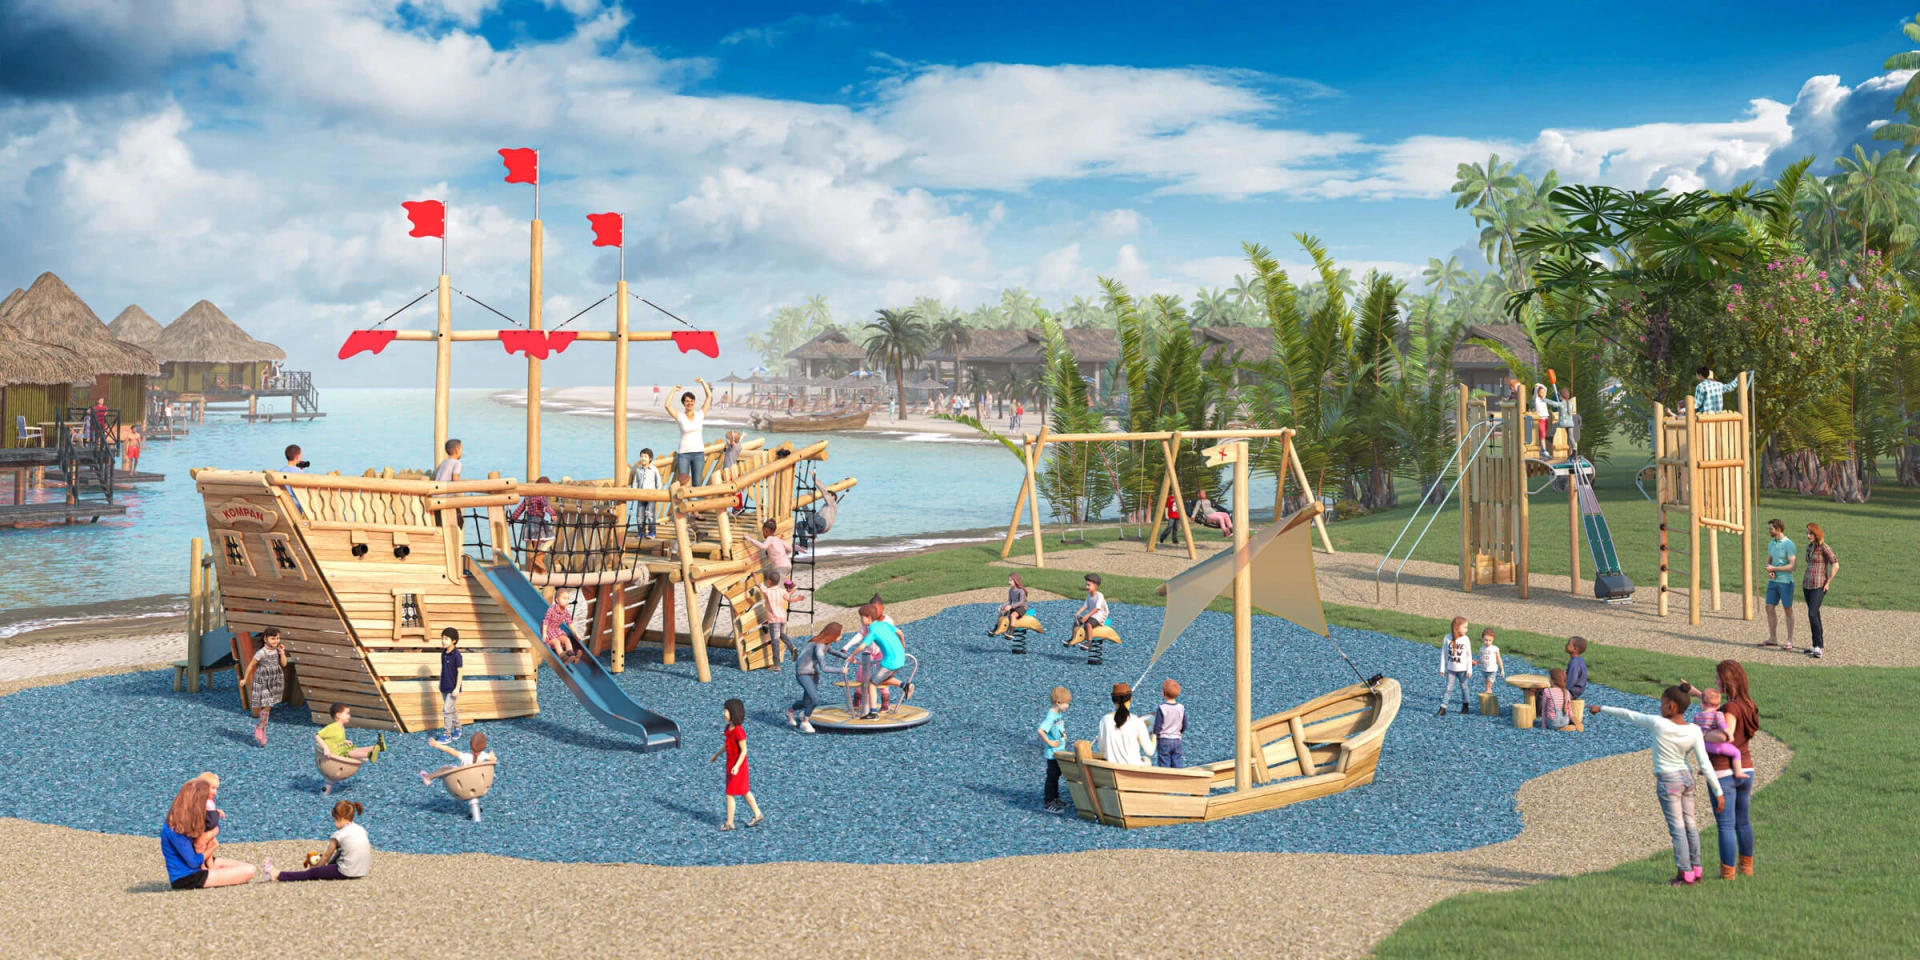 Idea de diseño de un parque infantil de madera con temática pirata cerca del mar